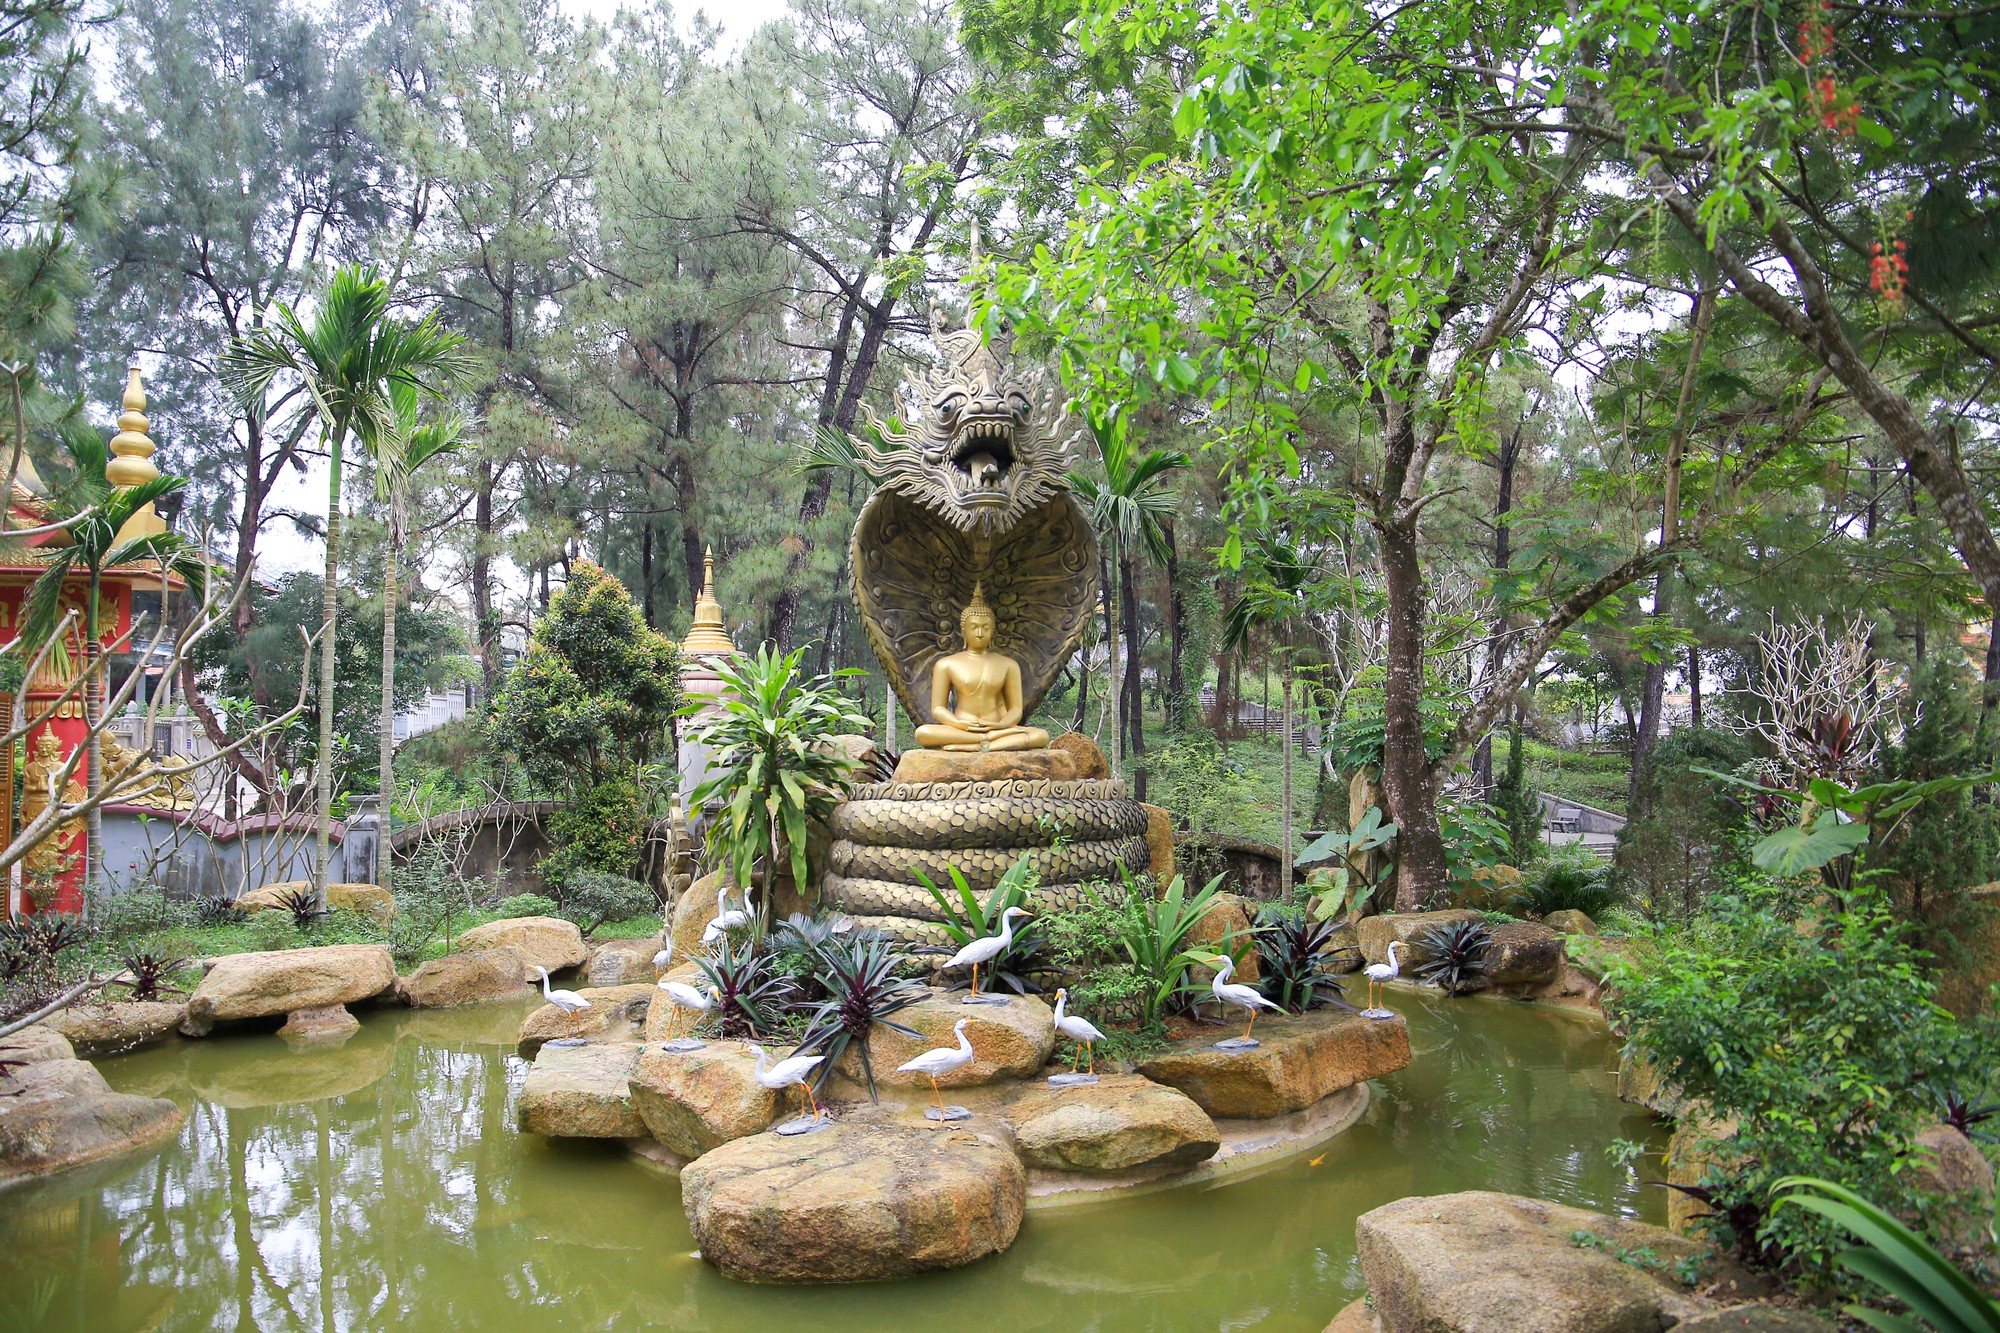 Bước vào cổng chùa, 2 bên được trang trí với các tượng hình người và con vật. Đặc biệt, có bức tượng Phật Thích Ca tọa thiền dưới sự bảo hộ của Xà Vương rất đặc sắc.